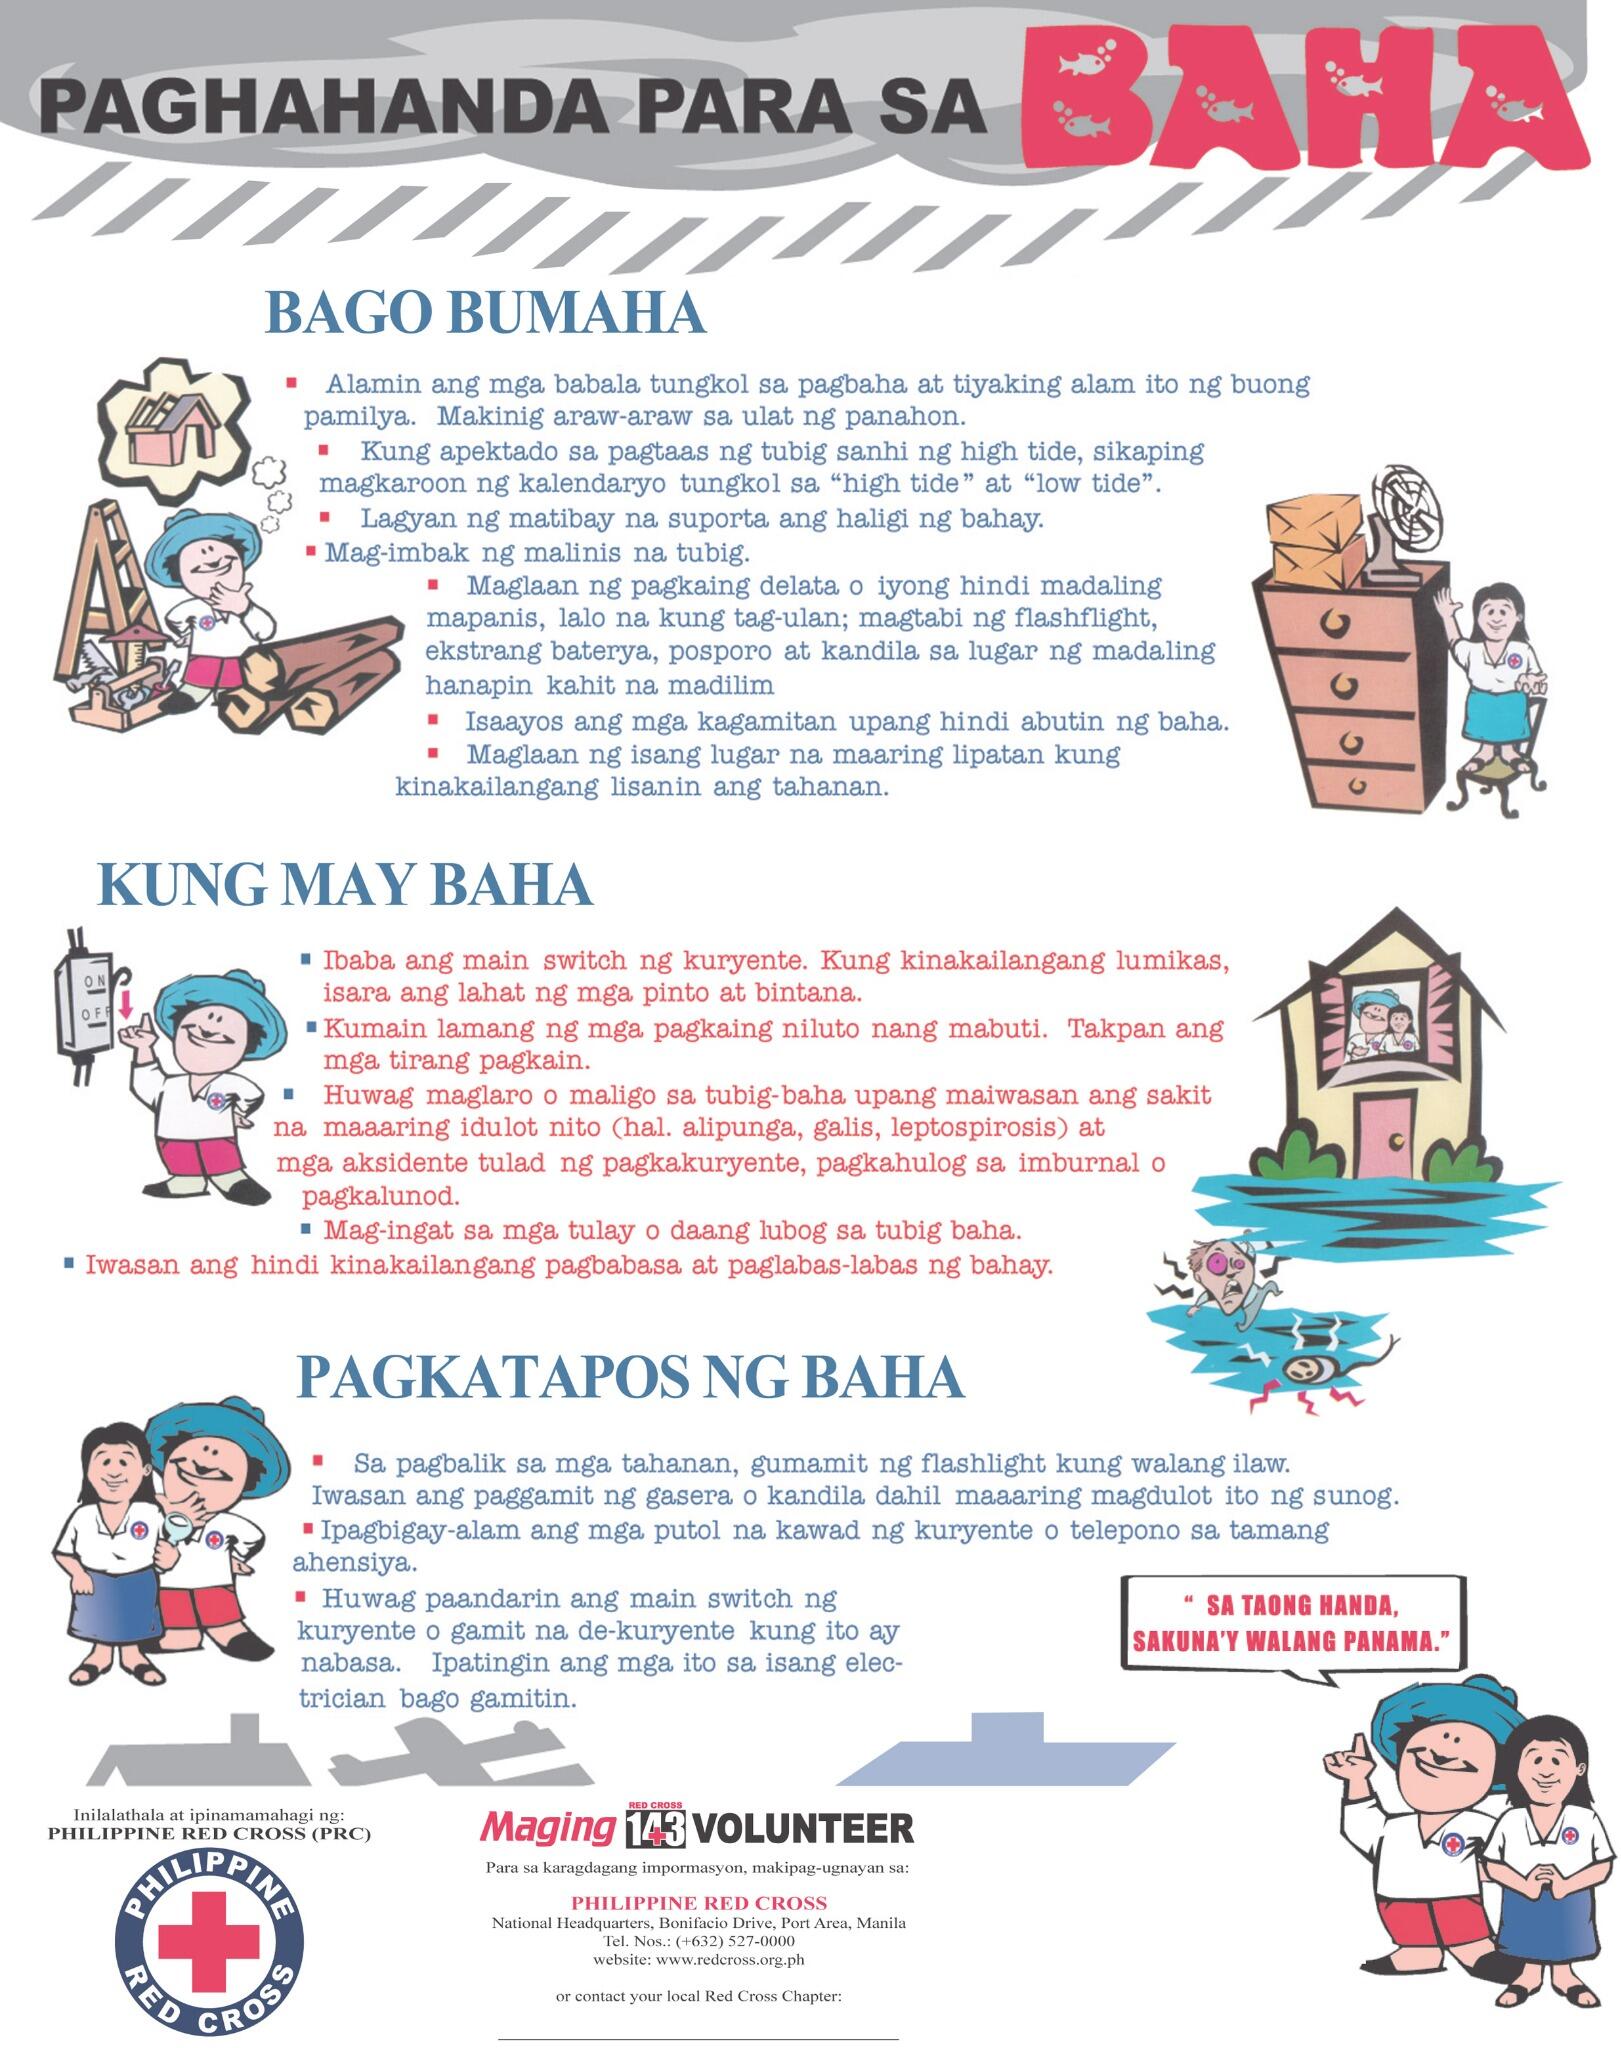 Philippine Red Cross on Twitter: "Ang ang dapat gawin pagkatapos na